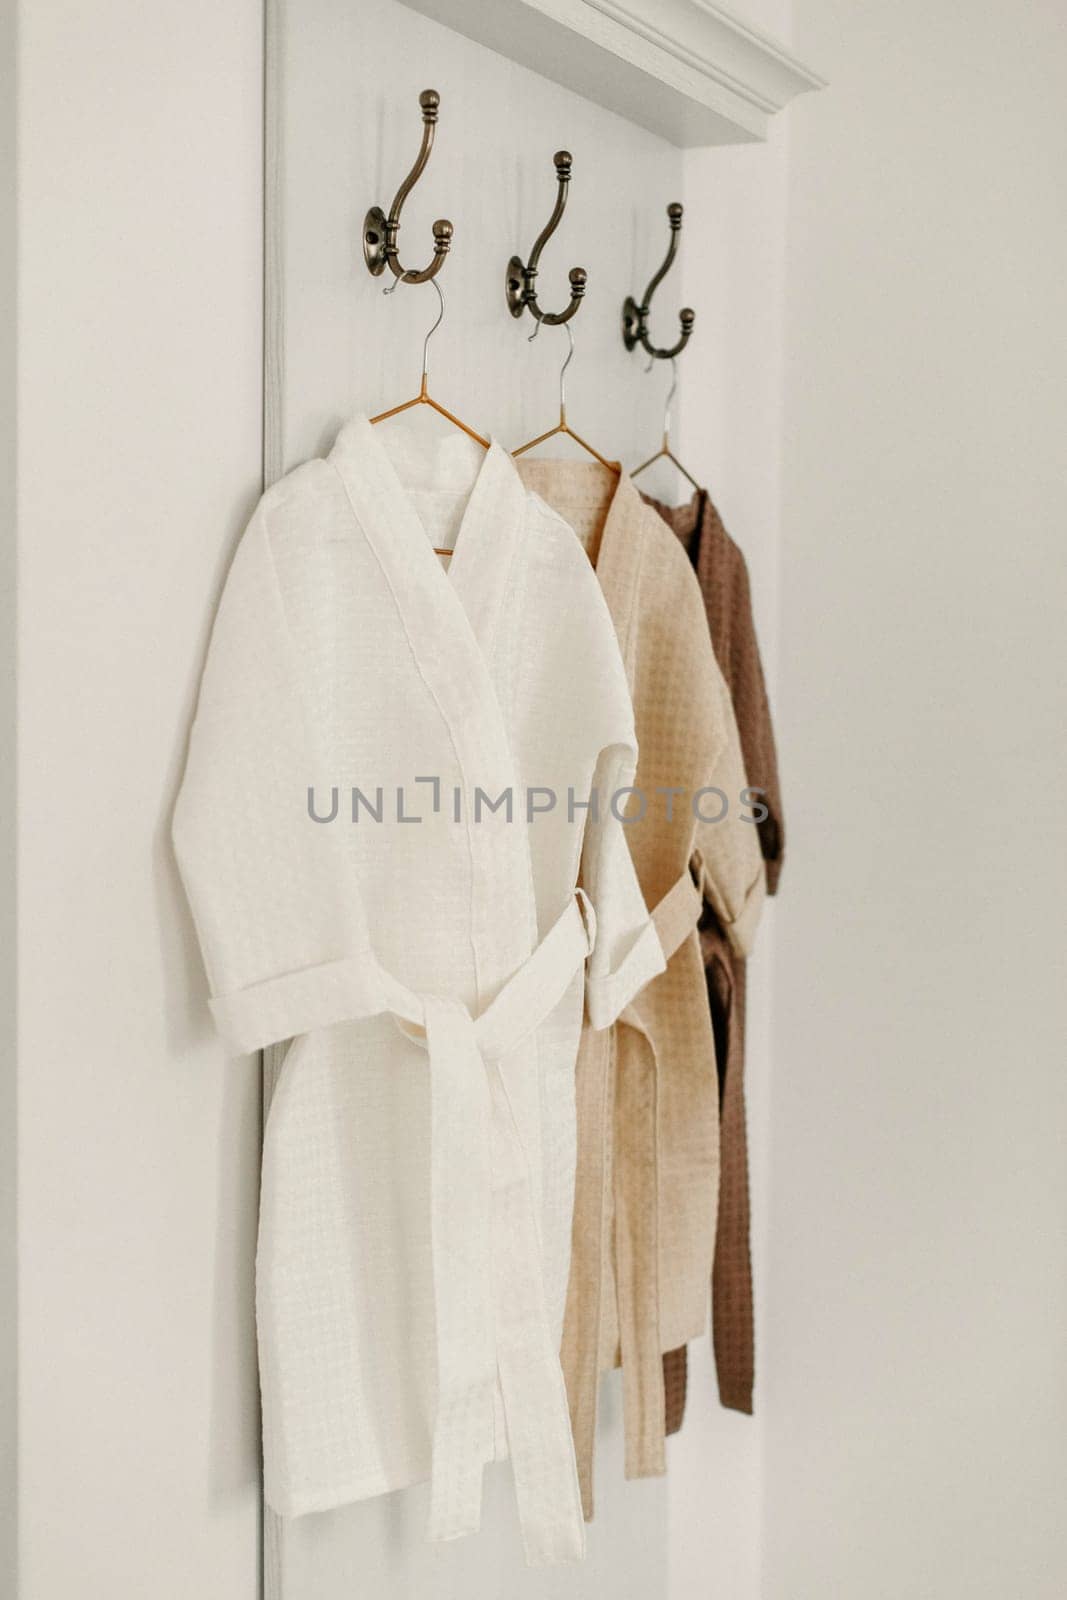 Linen bathrobes hang on a hanger in the bathroom by Sd28DimoN_1976